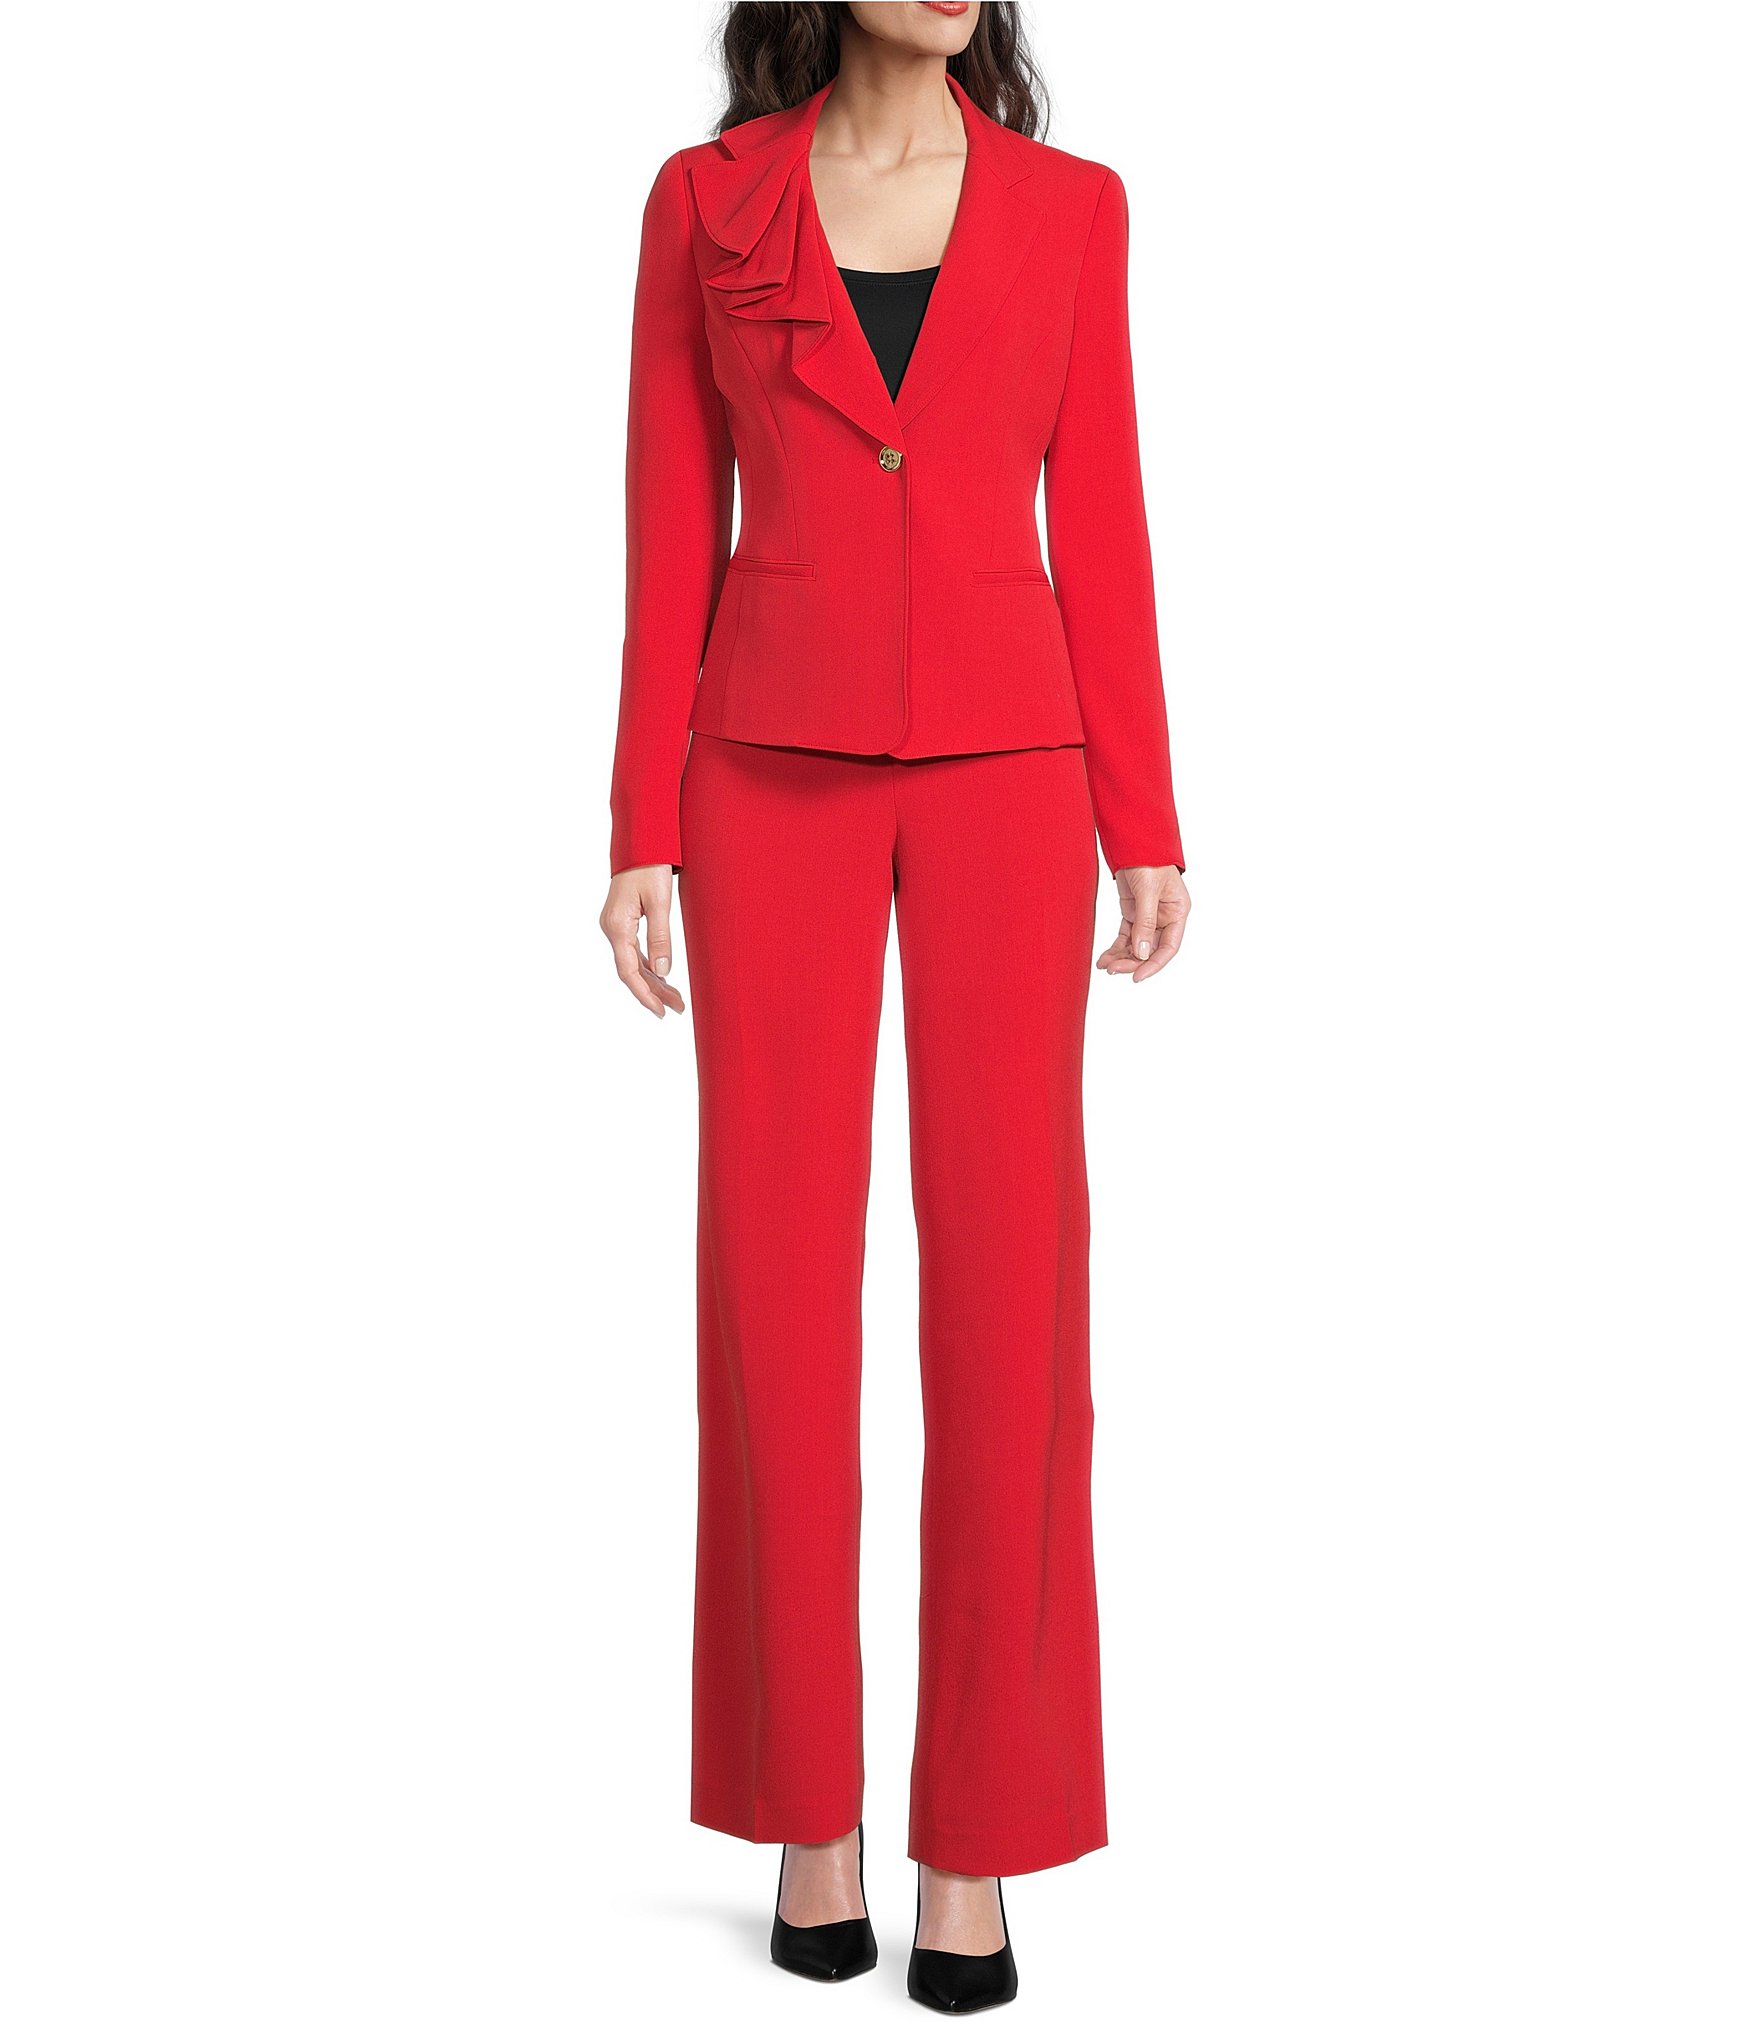 Red Suit Women